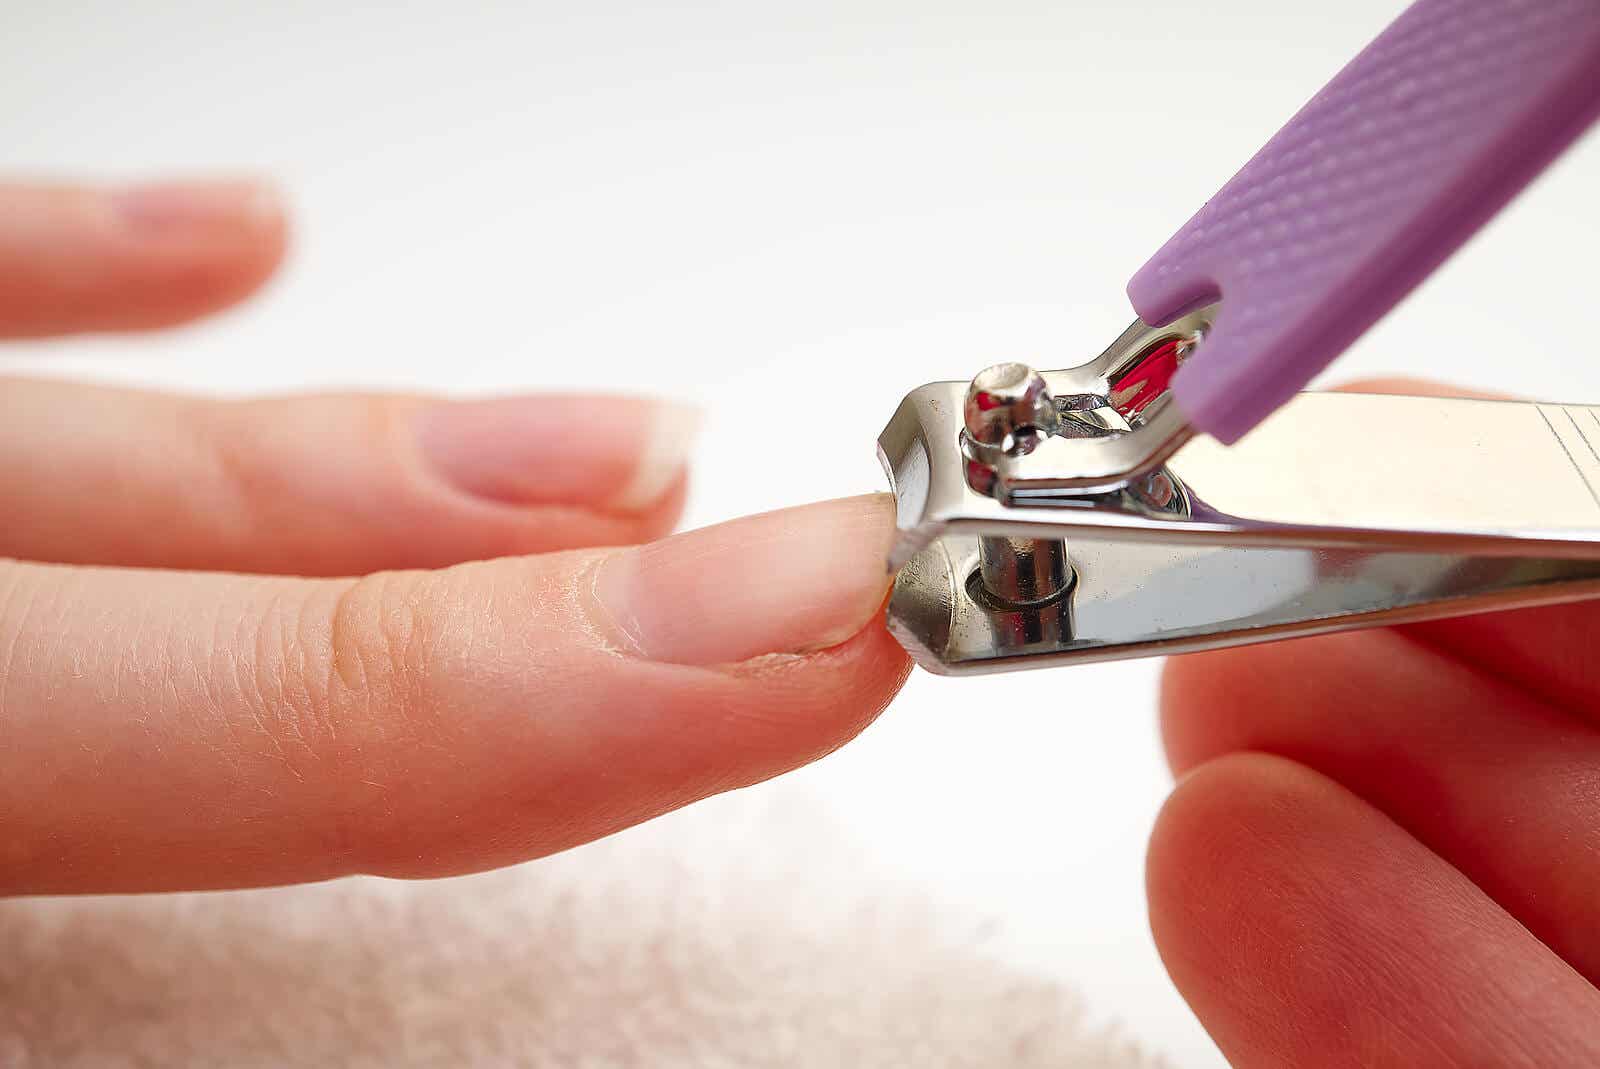 Es necesario aprender a cortar correctamente las uñas de las manos y los pies para evitar infecciones y otros problemas.